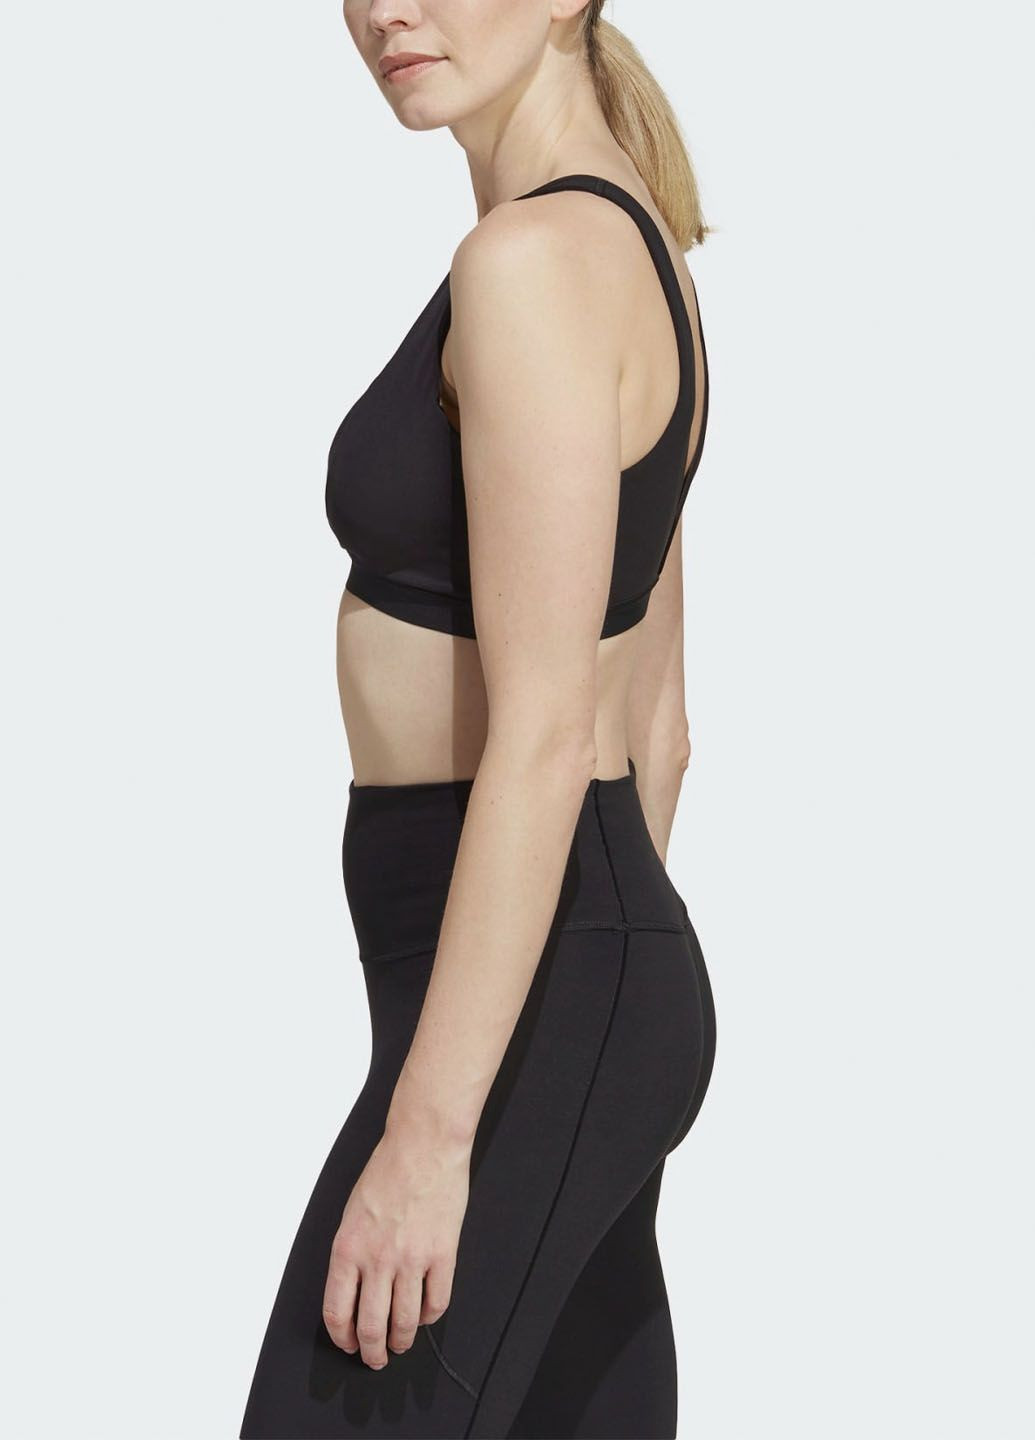 Чёрный бюстгальтер для йоги yoga essentials ic8062 adidas